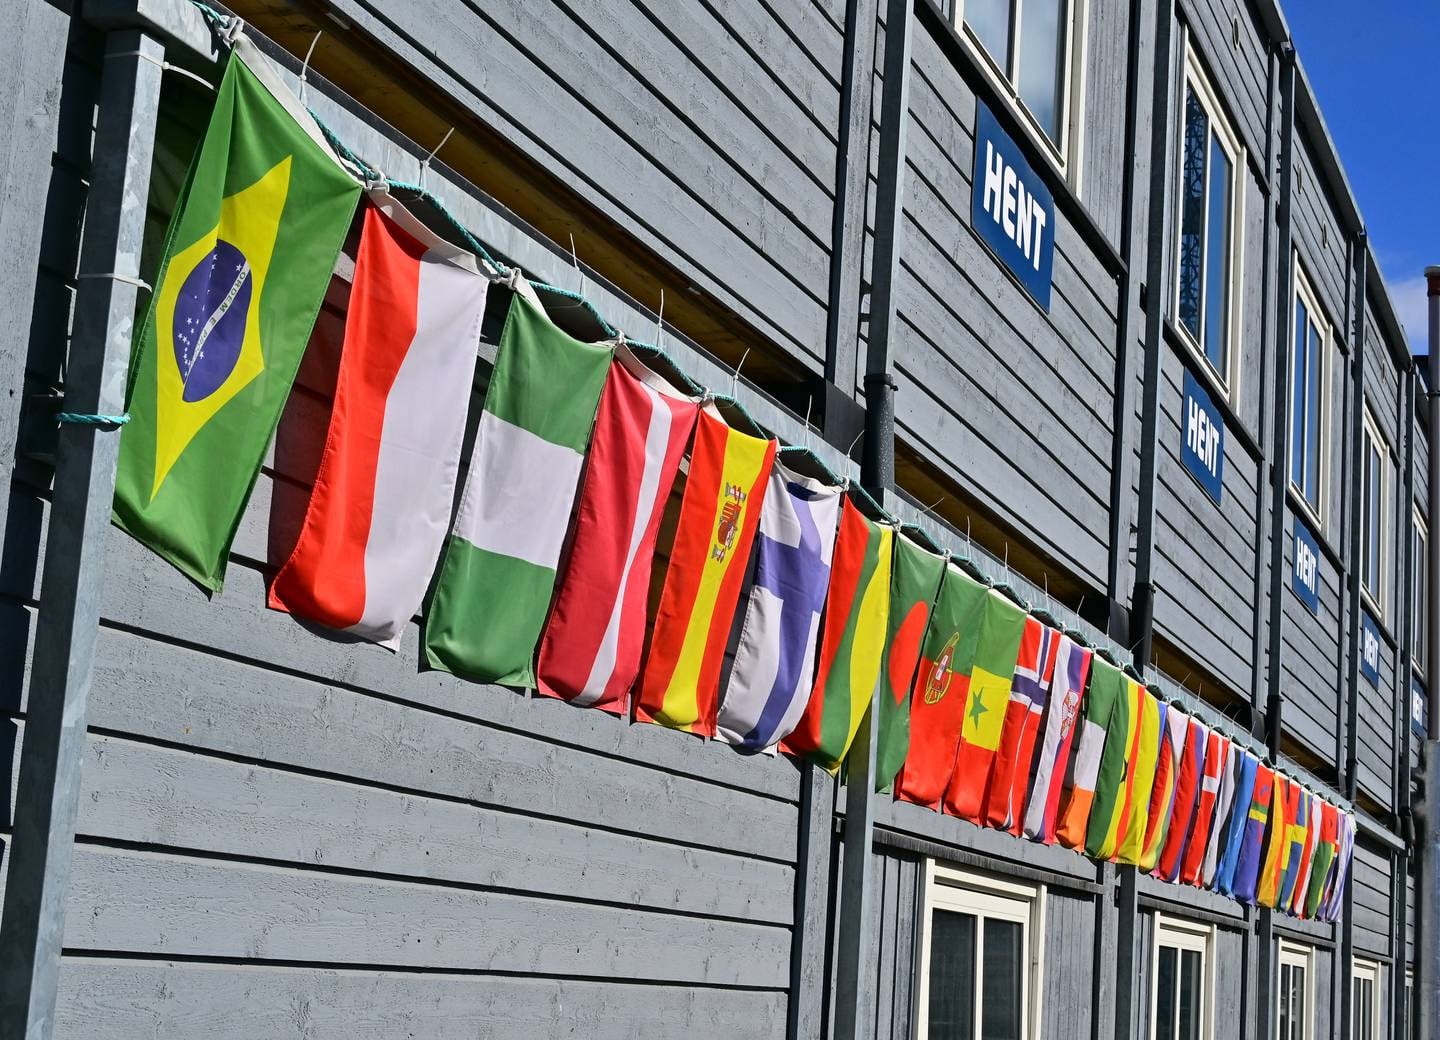 Livsvitenskapsbygget, som er under oppføring i Oslo, er en av byggeplassene med arbeidere fra mange land. Det har de markert med å henge opp flaggene til 28 hjemland på brakkeriggen.